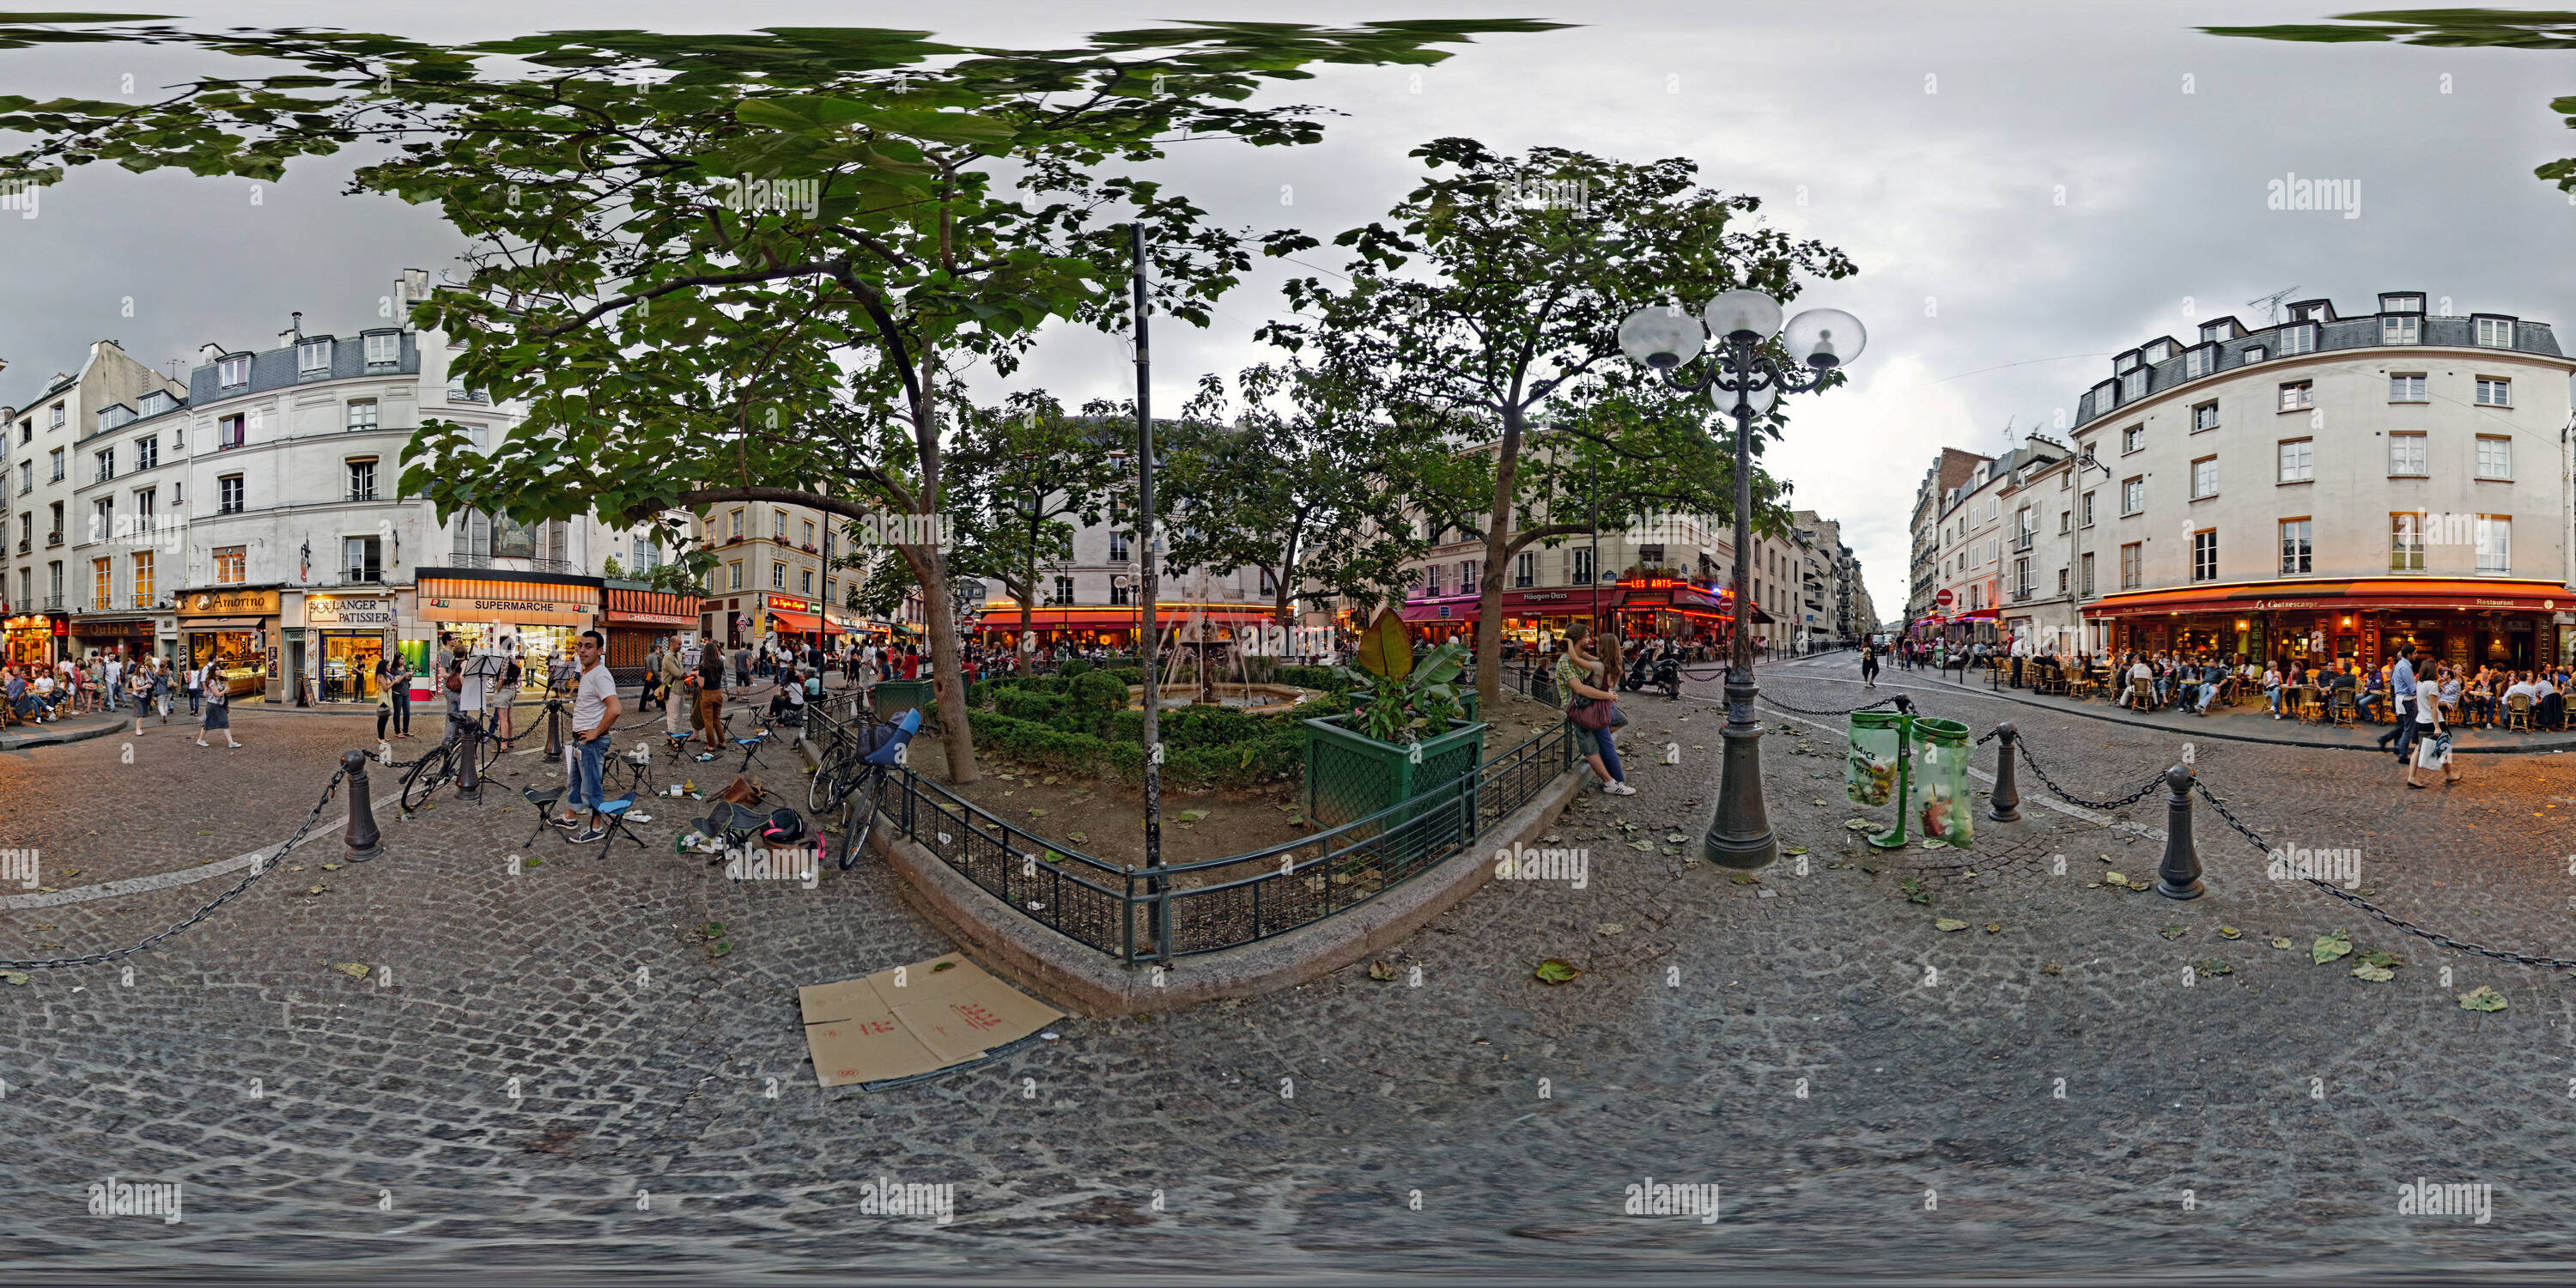 360 degree panoramic view of Place de la Contrescarpe, Paris, France